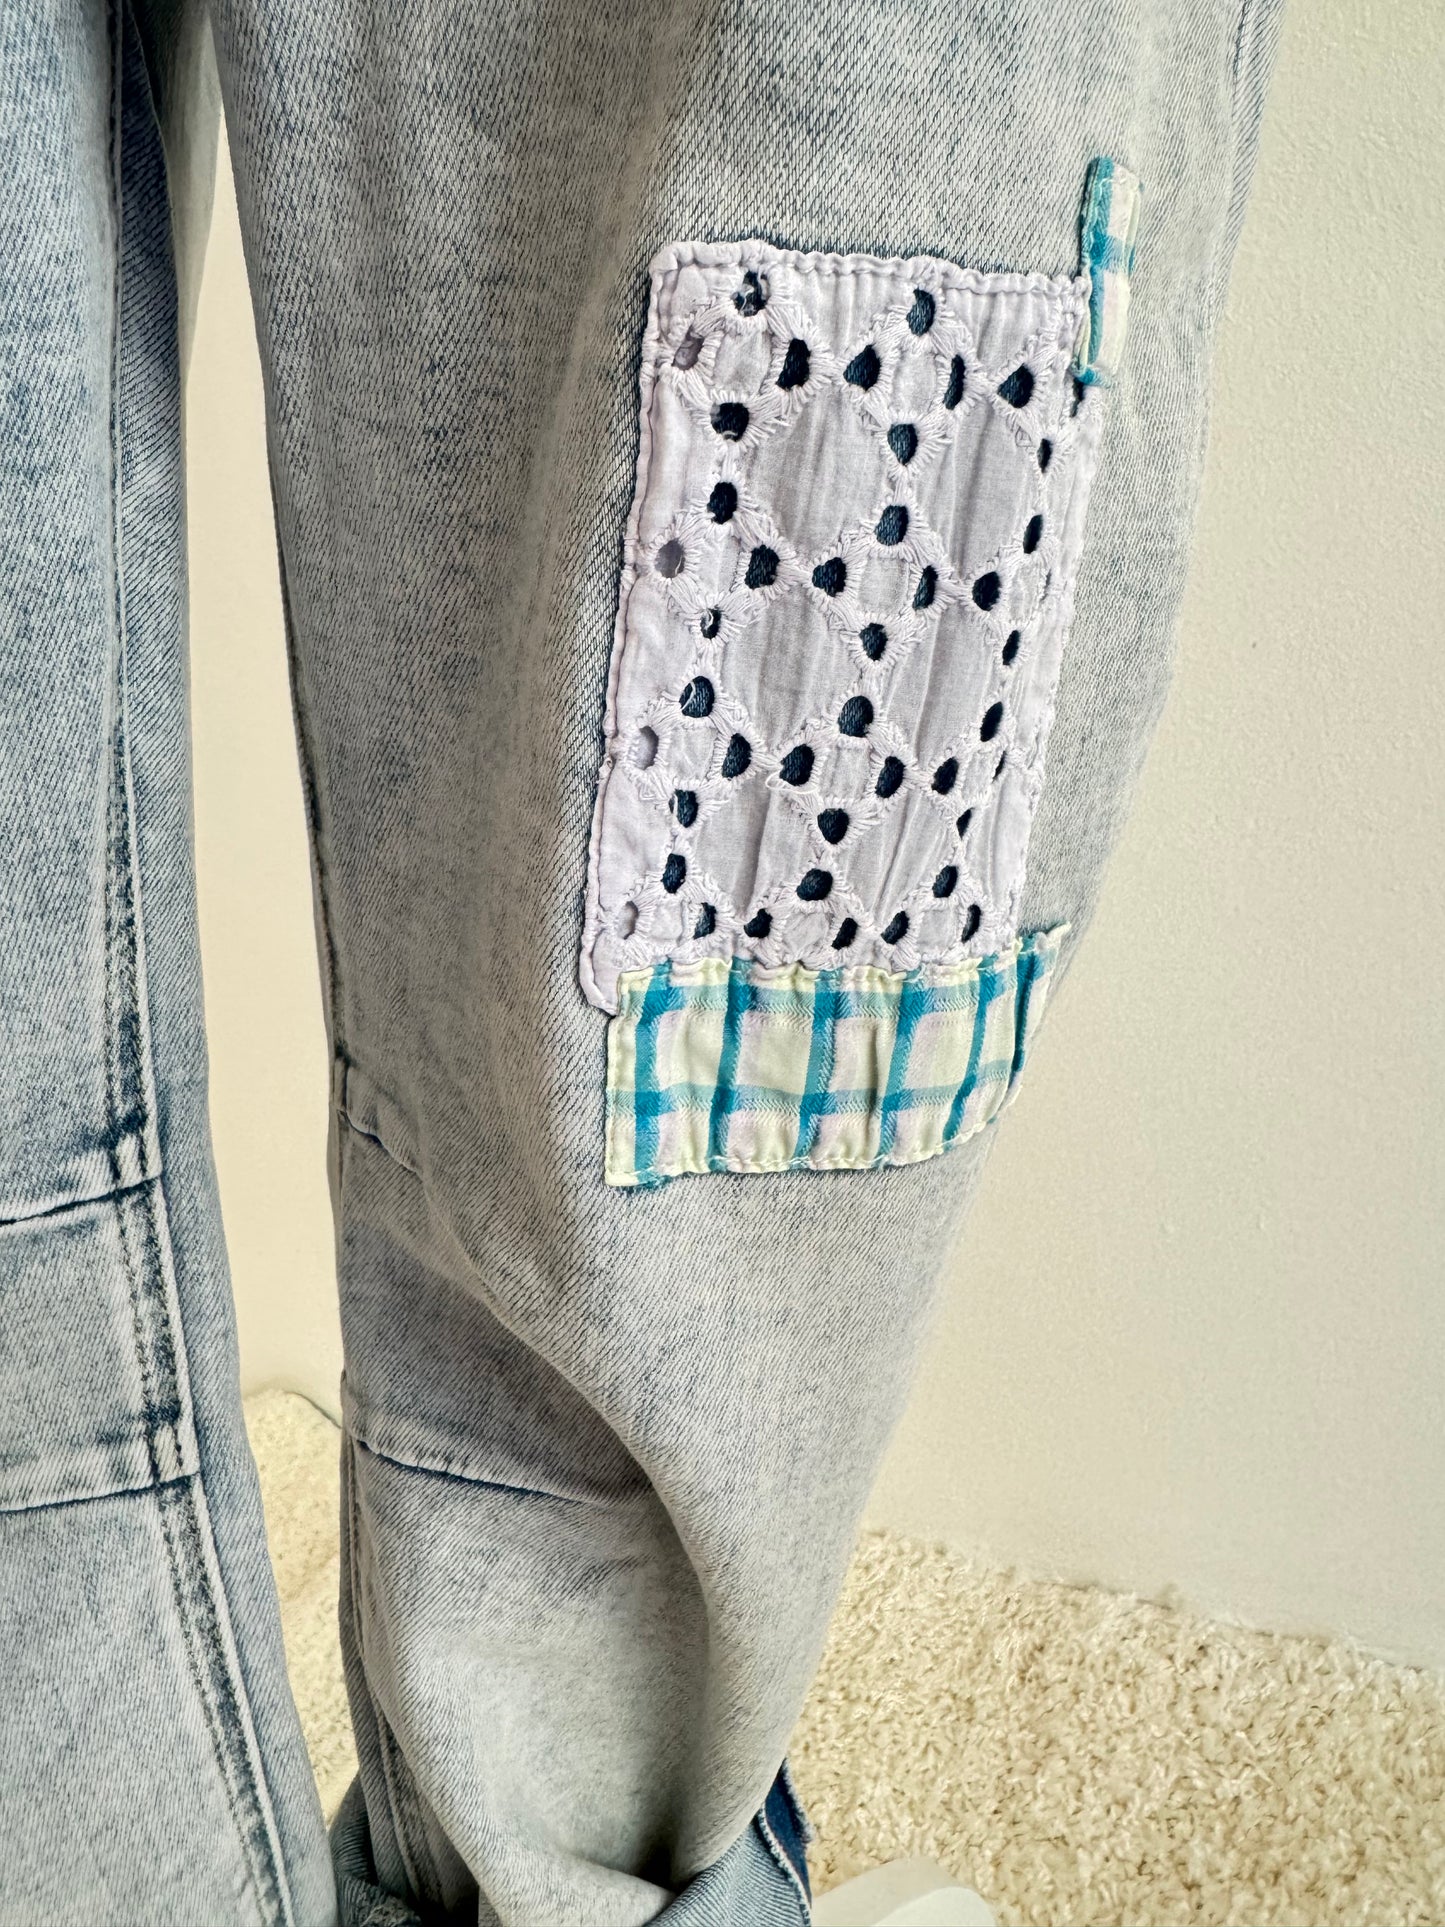 Jeanshose mit dem gewissen Etwas – Mode in M und XL für einen individuellen Look